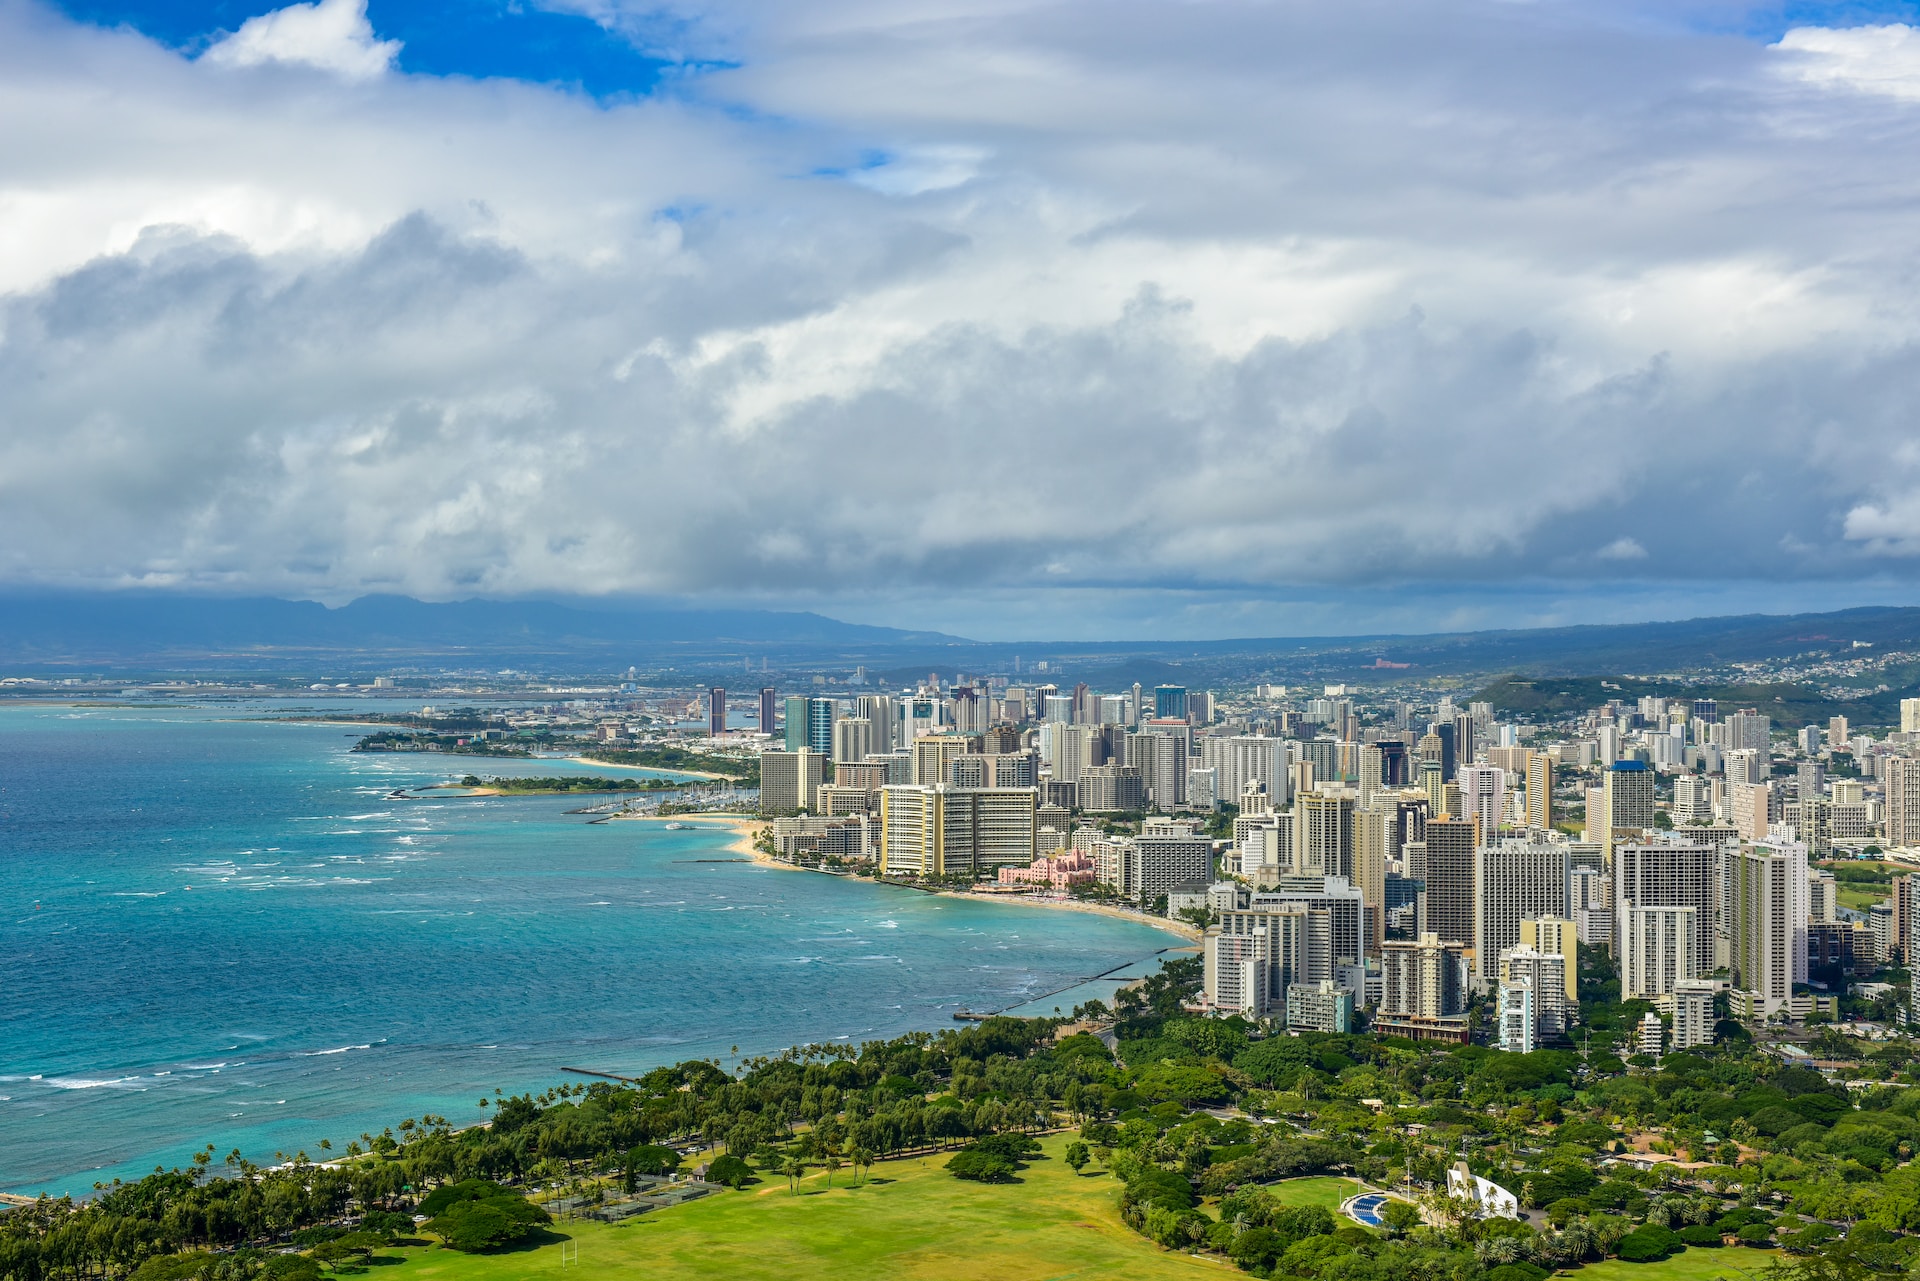 Aerial view of Honolulu.